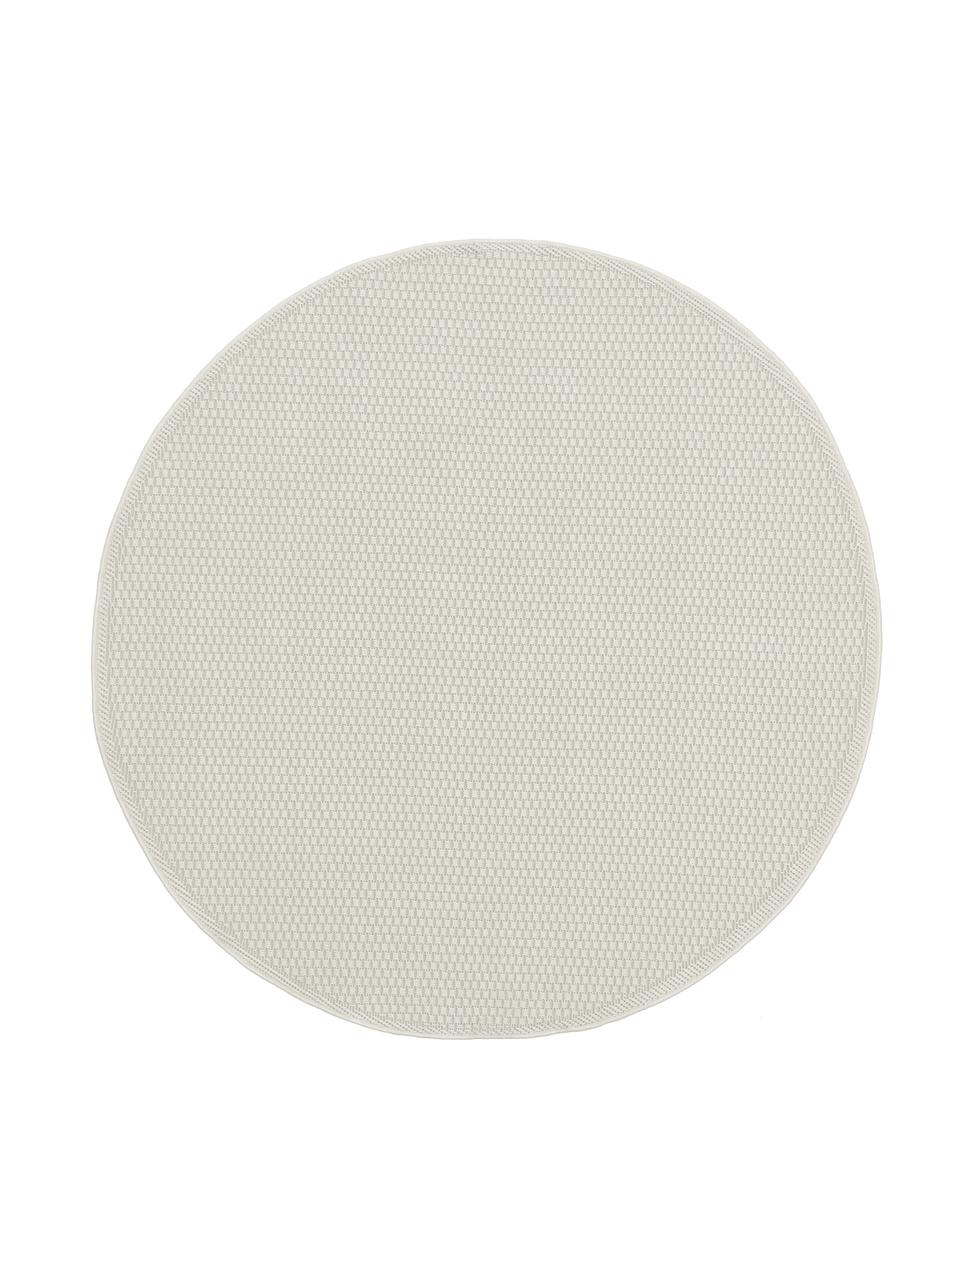 Tapis rond extérieur intérieur blanc crème Toronto, 100 % polypropylène, Blanc crème, Ø 120 cm (taille S)